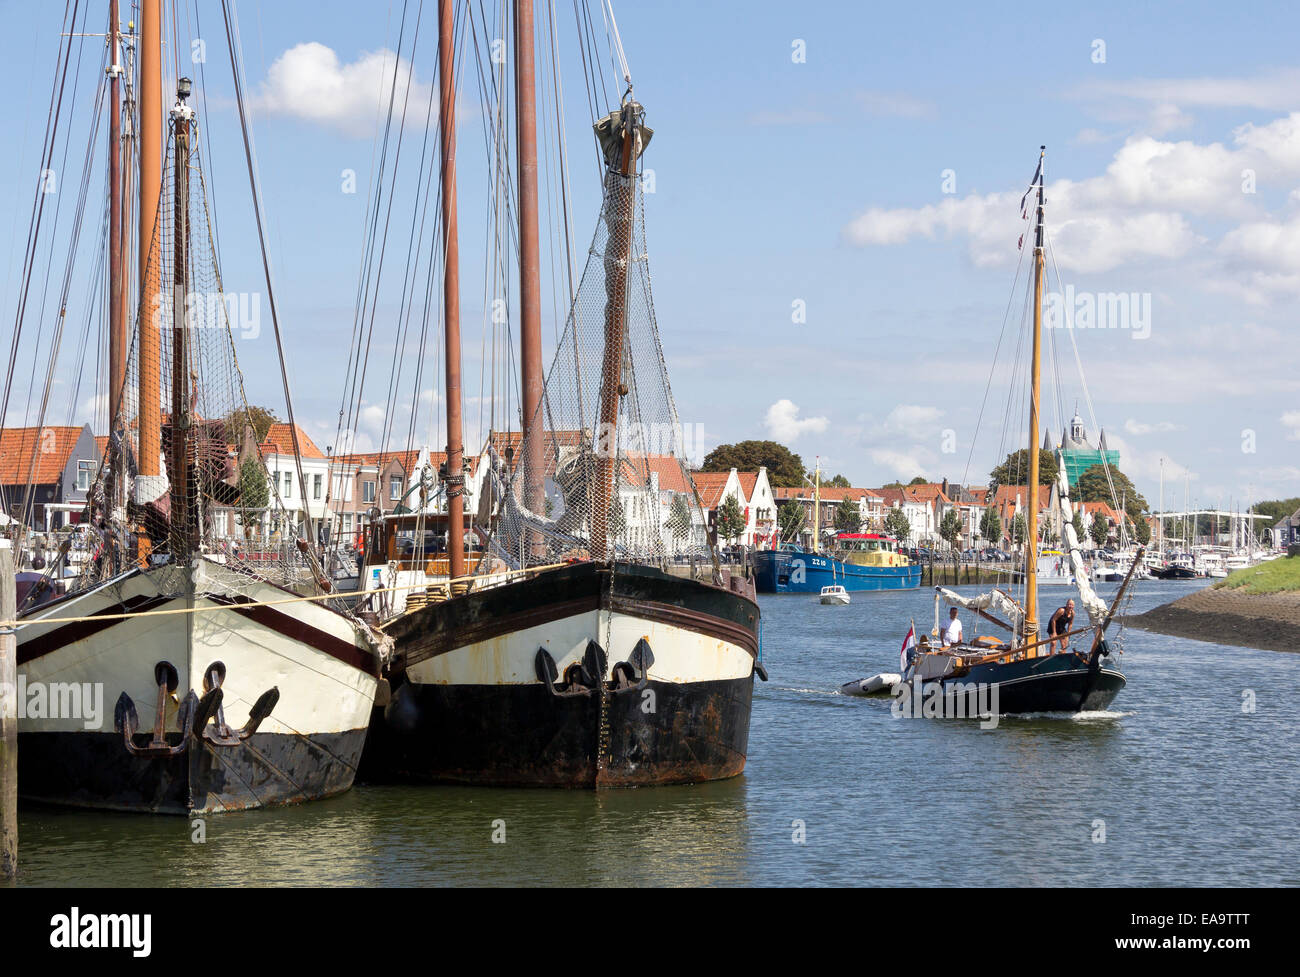 Tradizionale in legno chiatte olandese e una barca a vela che lascia il porto della città Zierikzee, Schouwen-Duiveland, Paesi Bassi Foto Stock